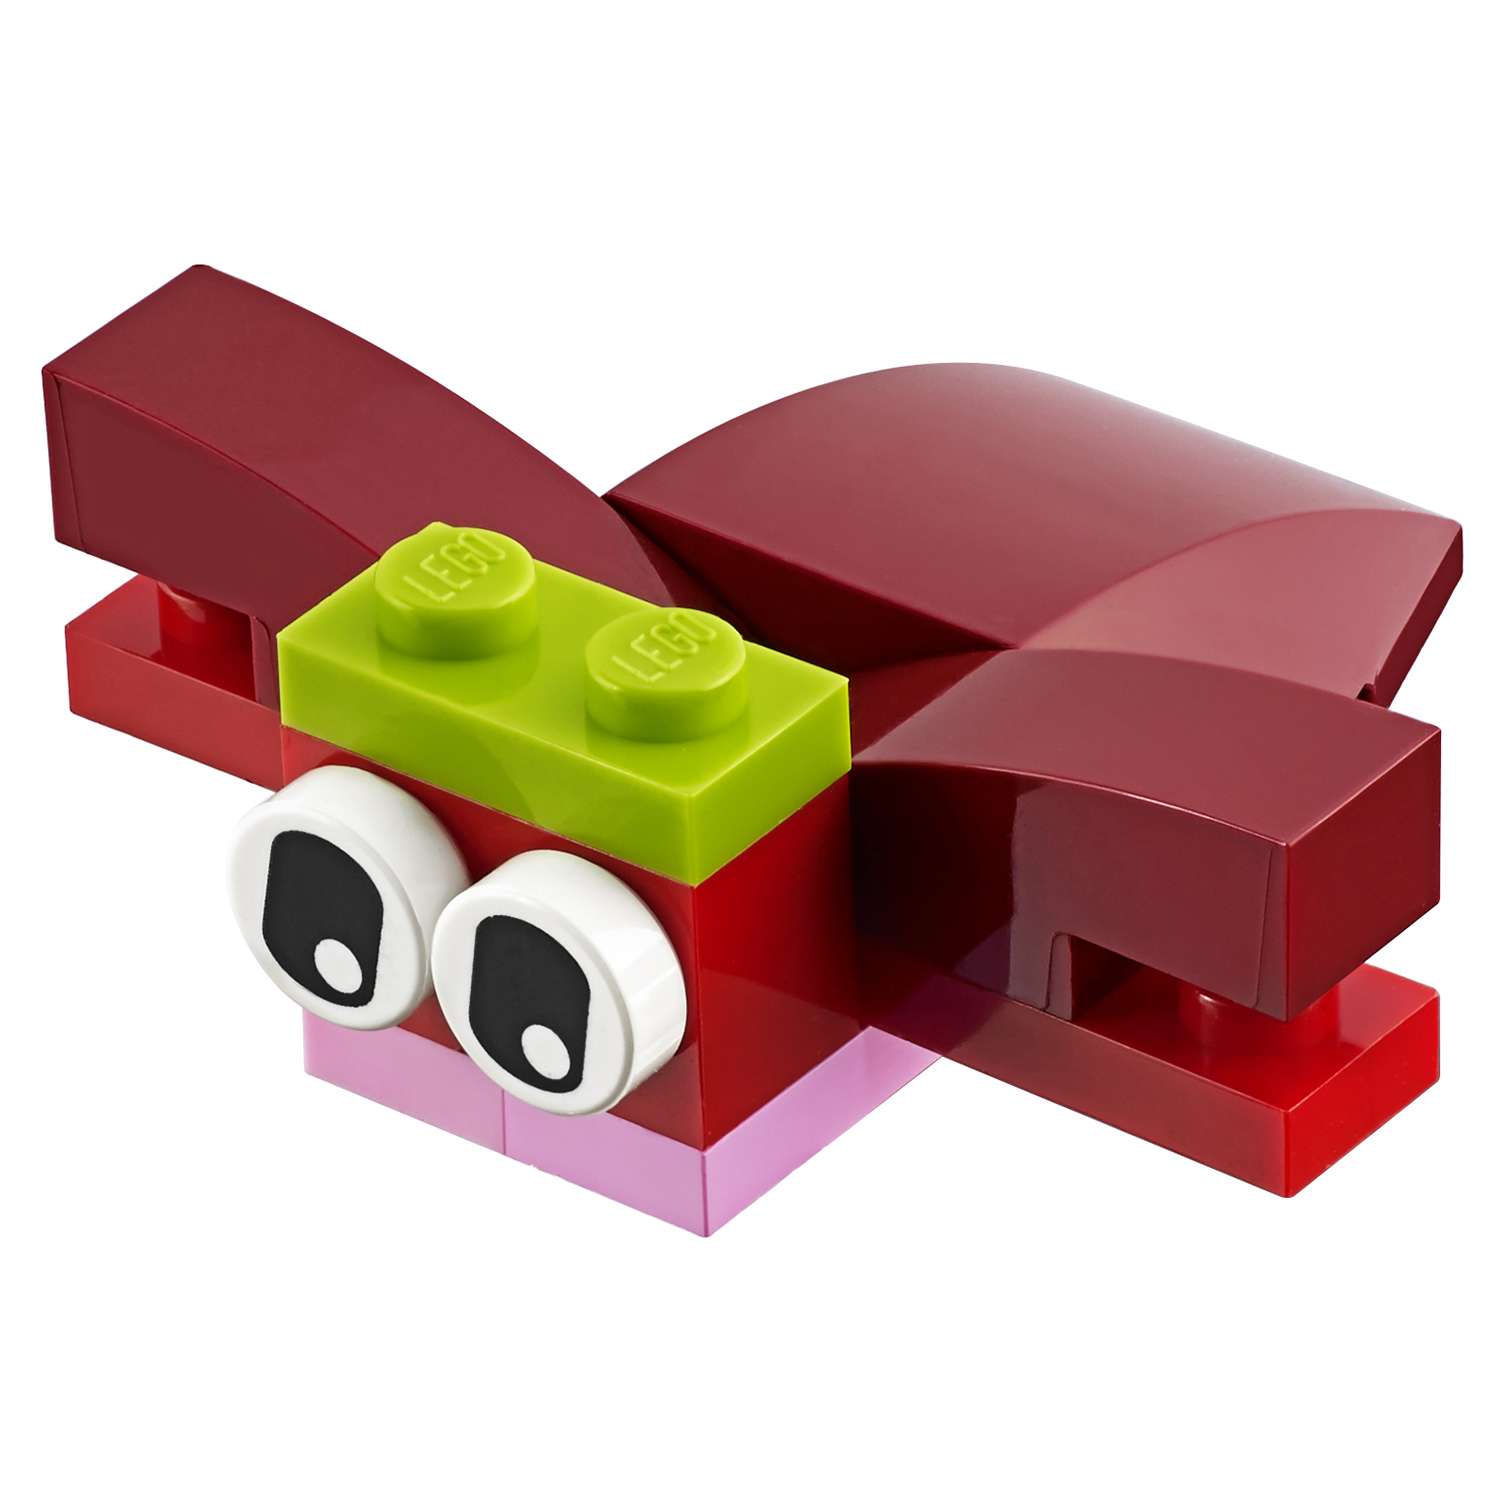 Конструктор LEGO Classic Красный набор для творчества (10707) - фото 6